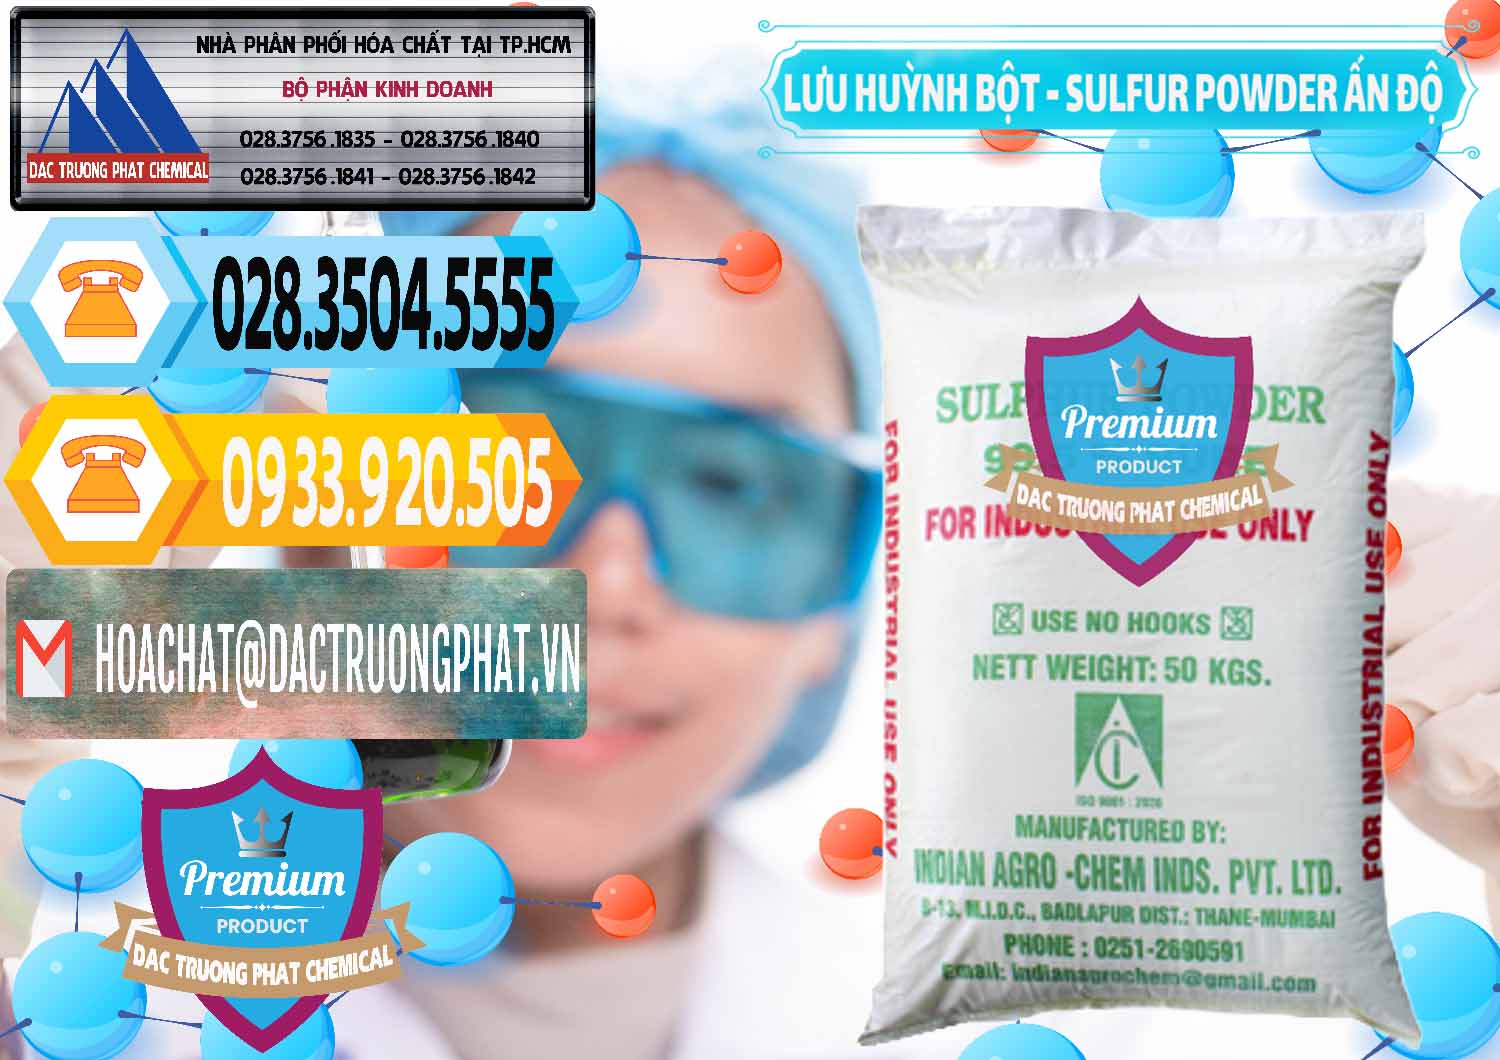 Cty chuyên cung cấp ( bán ) Lưu huỳnh Bột - Sulfur Powder Ấn Độ India - 0347 - Công ty chuyên cung ứng ( phân phối ) hóa chất tại TP.HCM - hoachattayrua.net